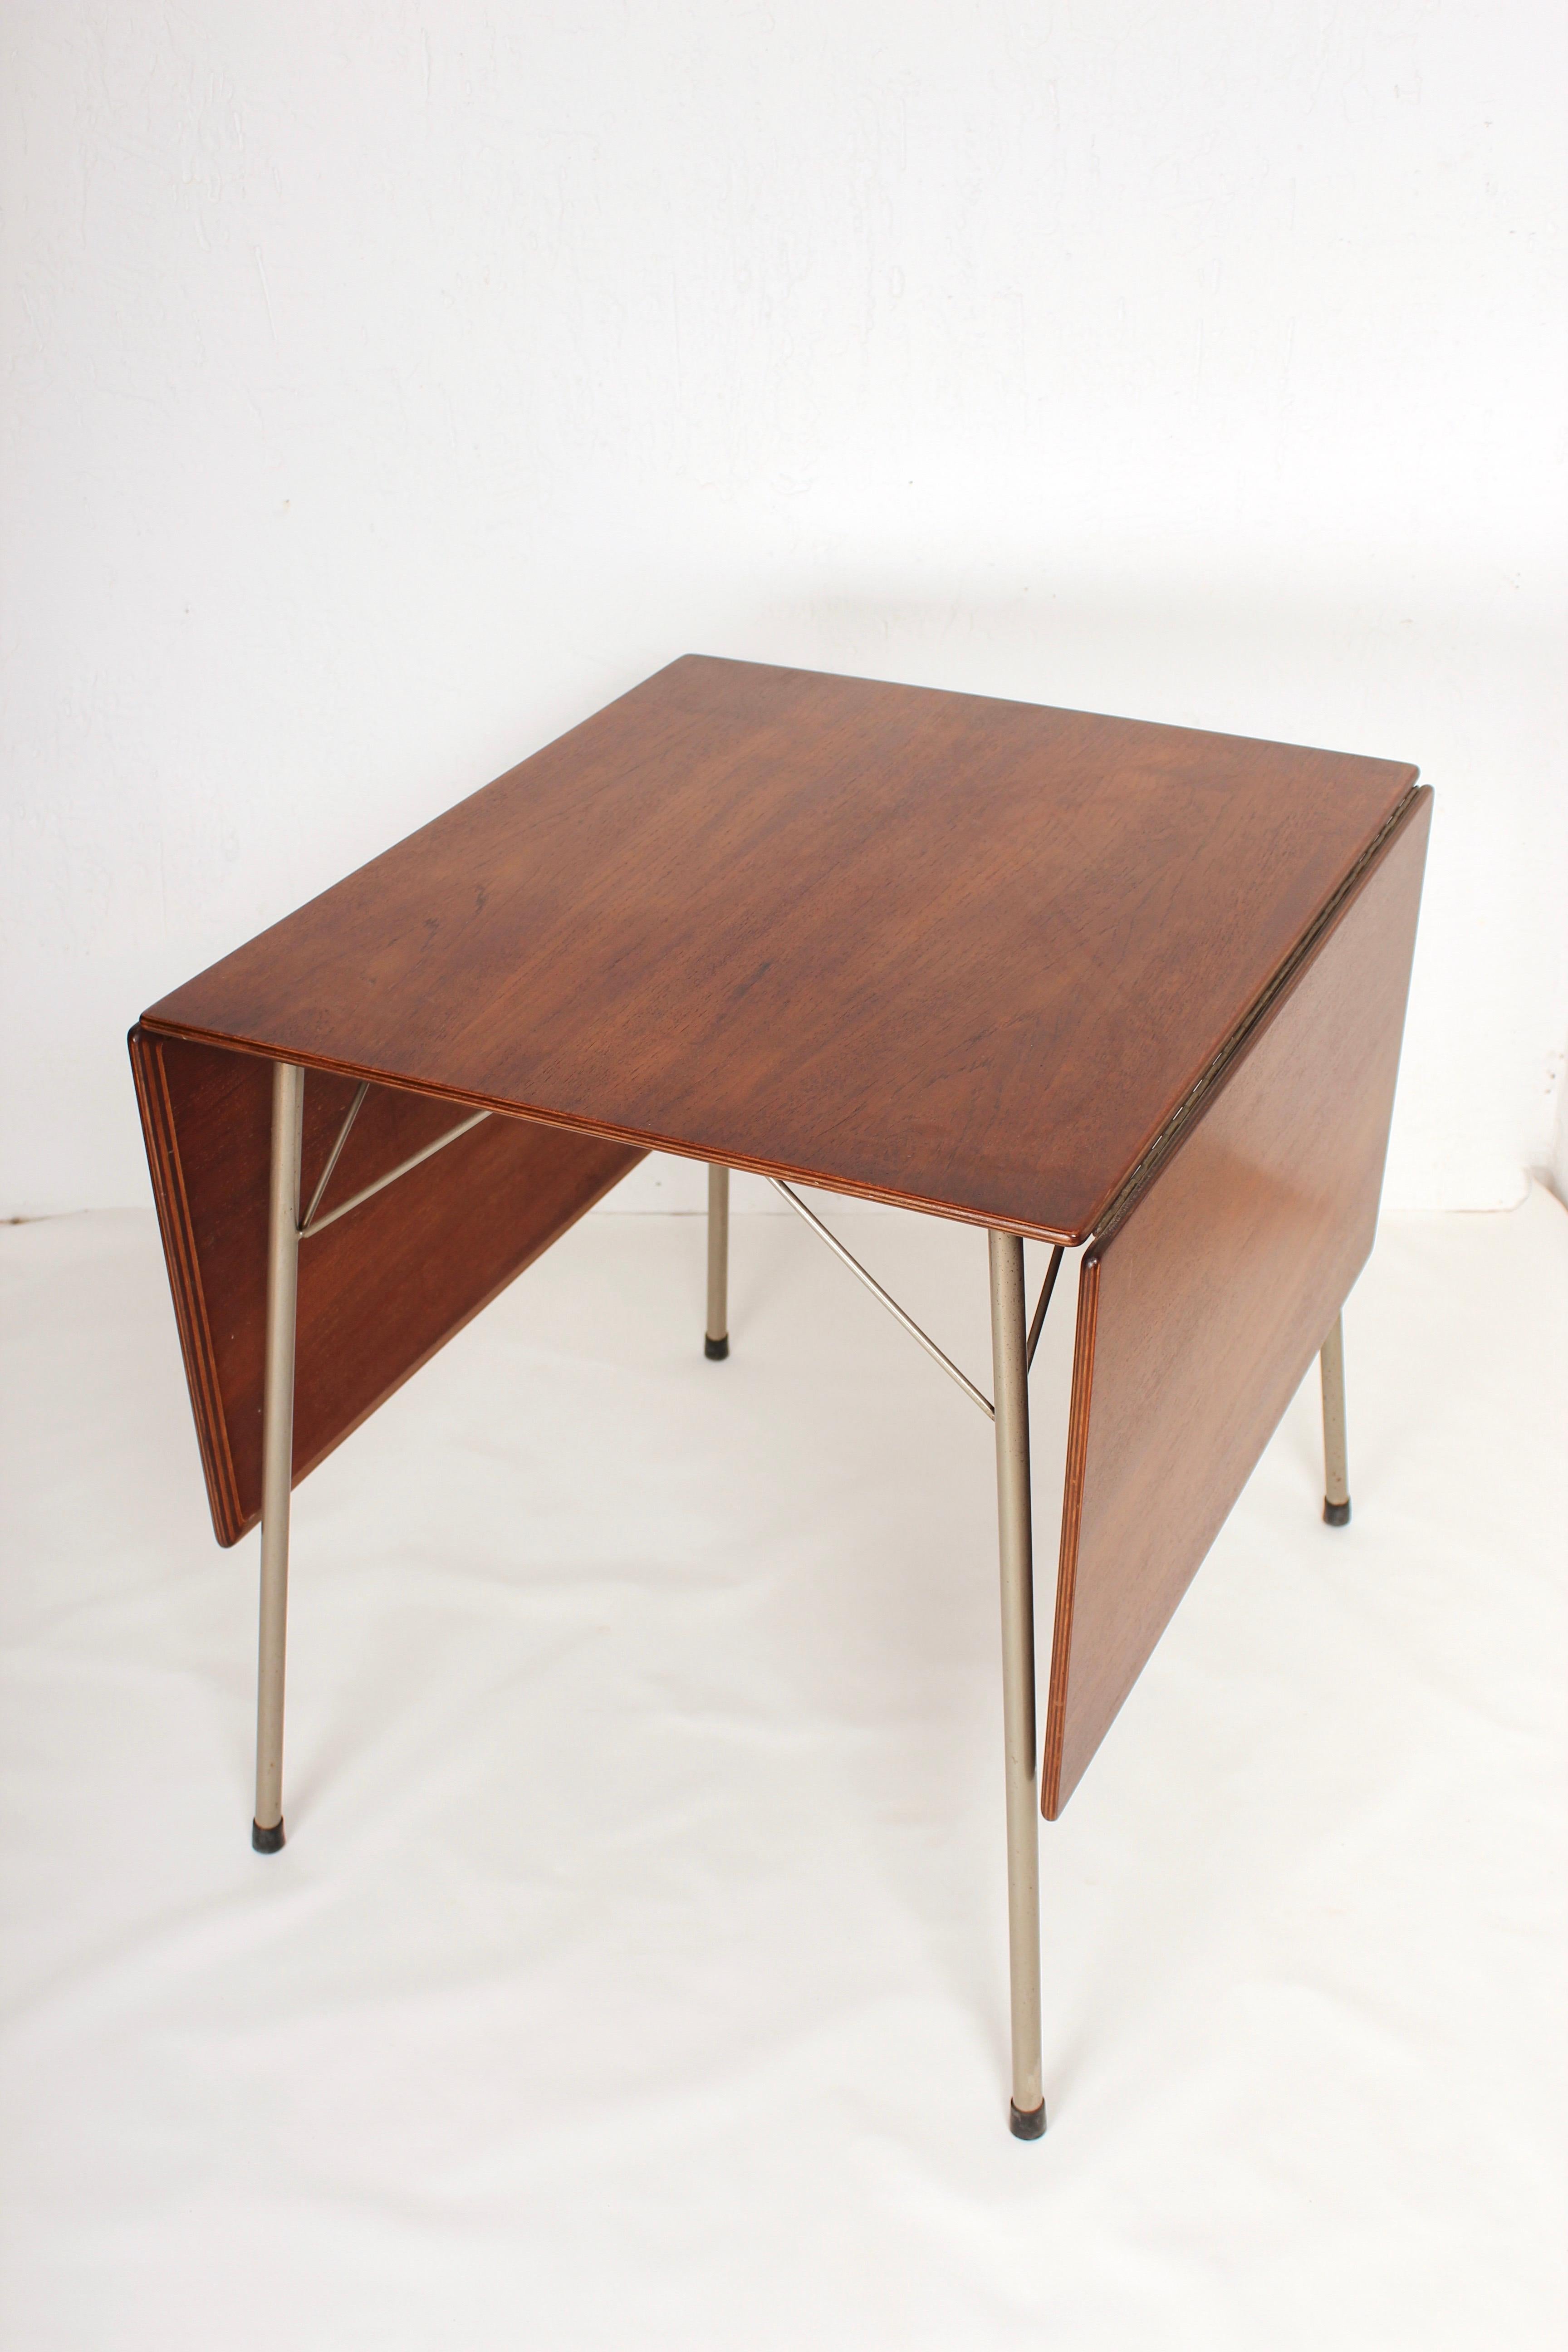 Danish Folding Dining Table by Arne Jacobsen for Fritz Hansen Model 3601, 1950s For Sale 1